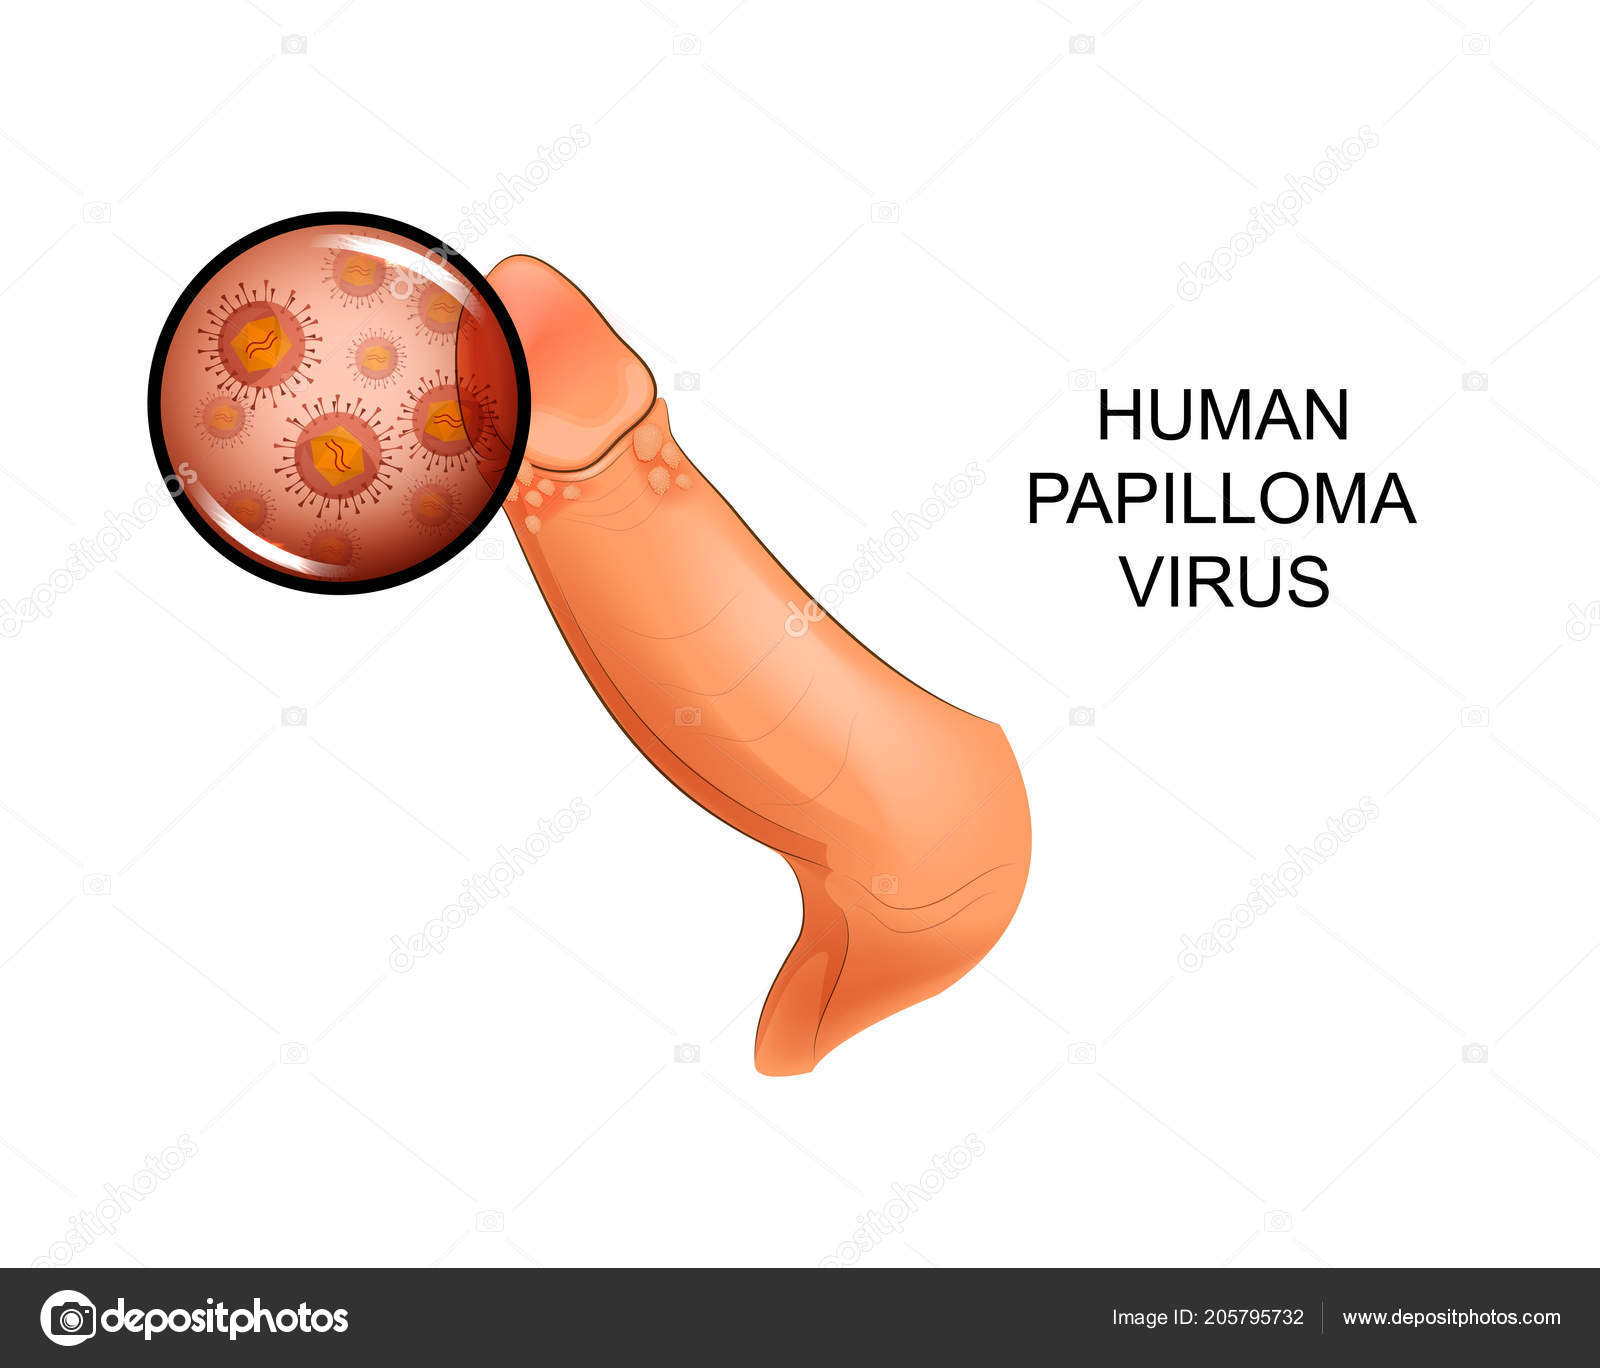 human papilloma virus male